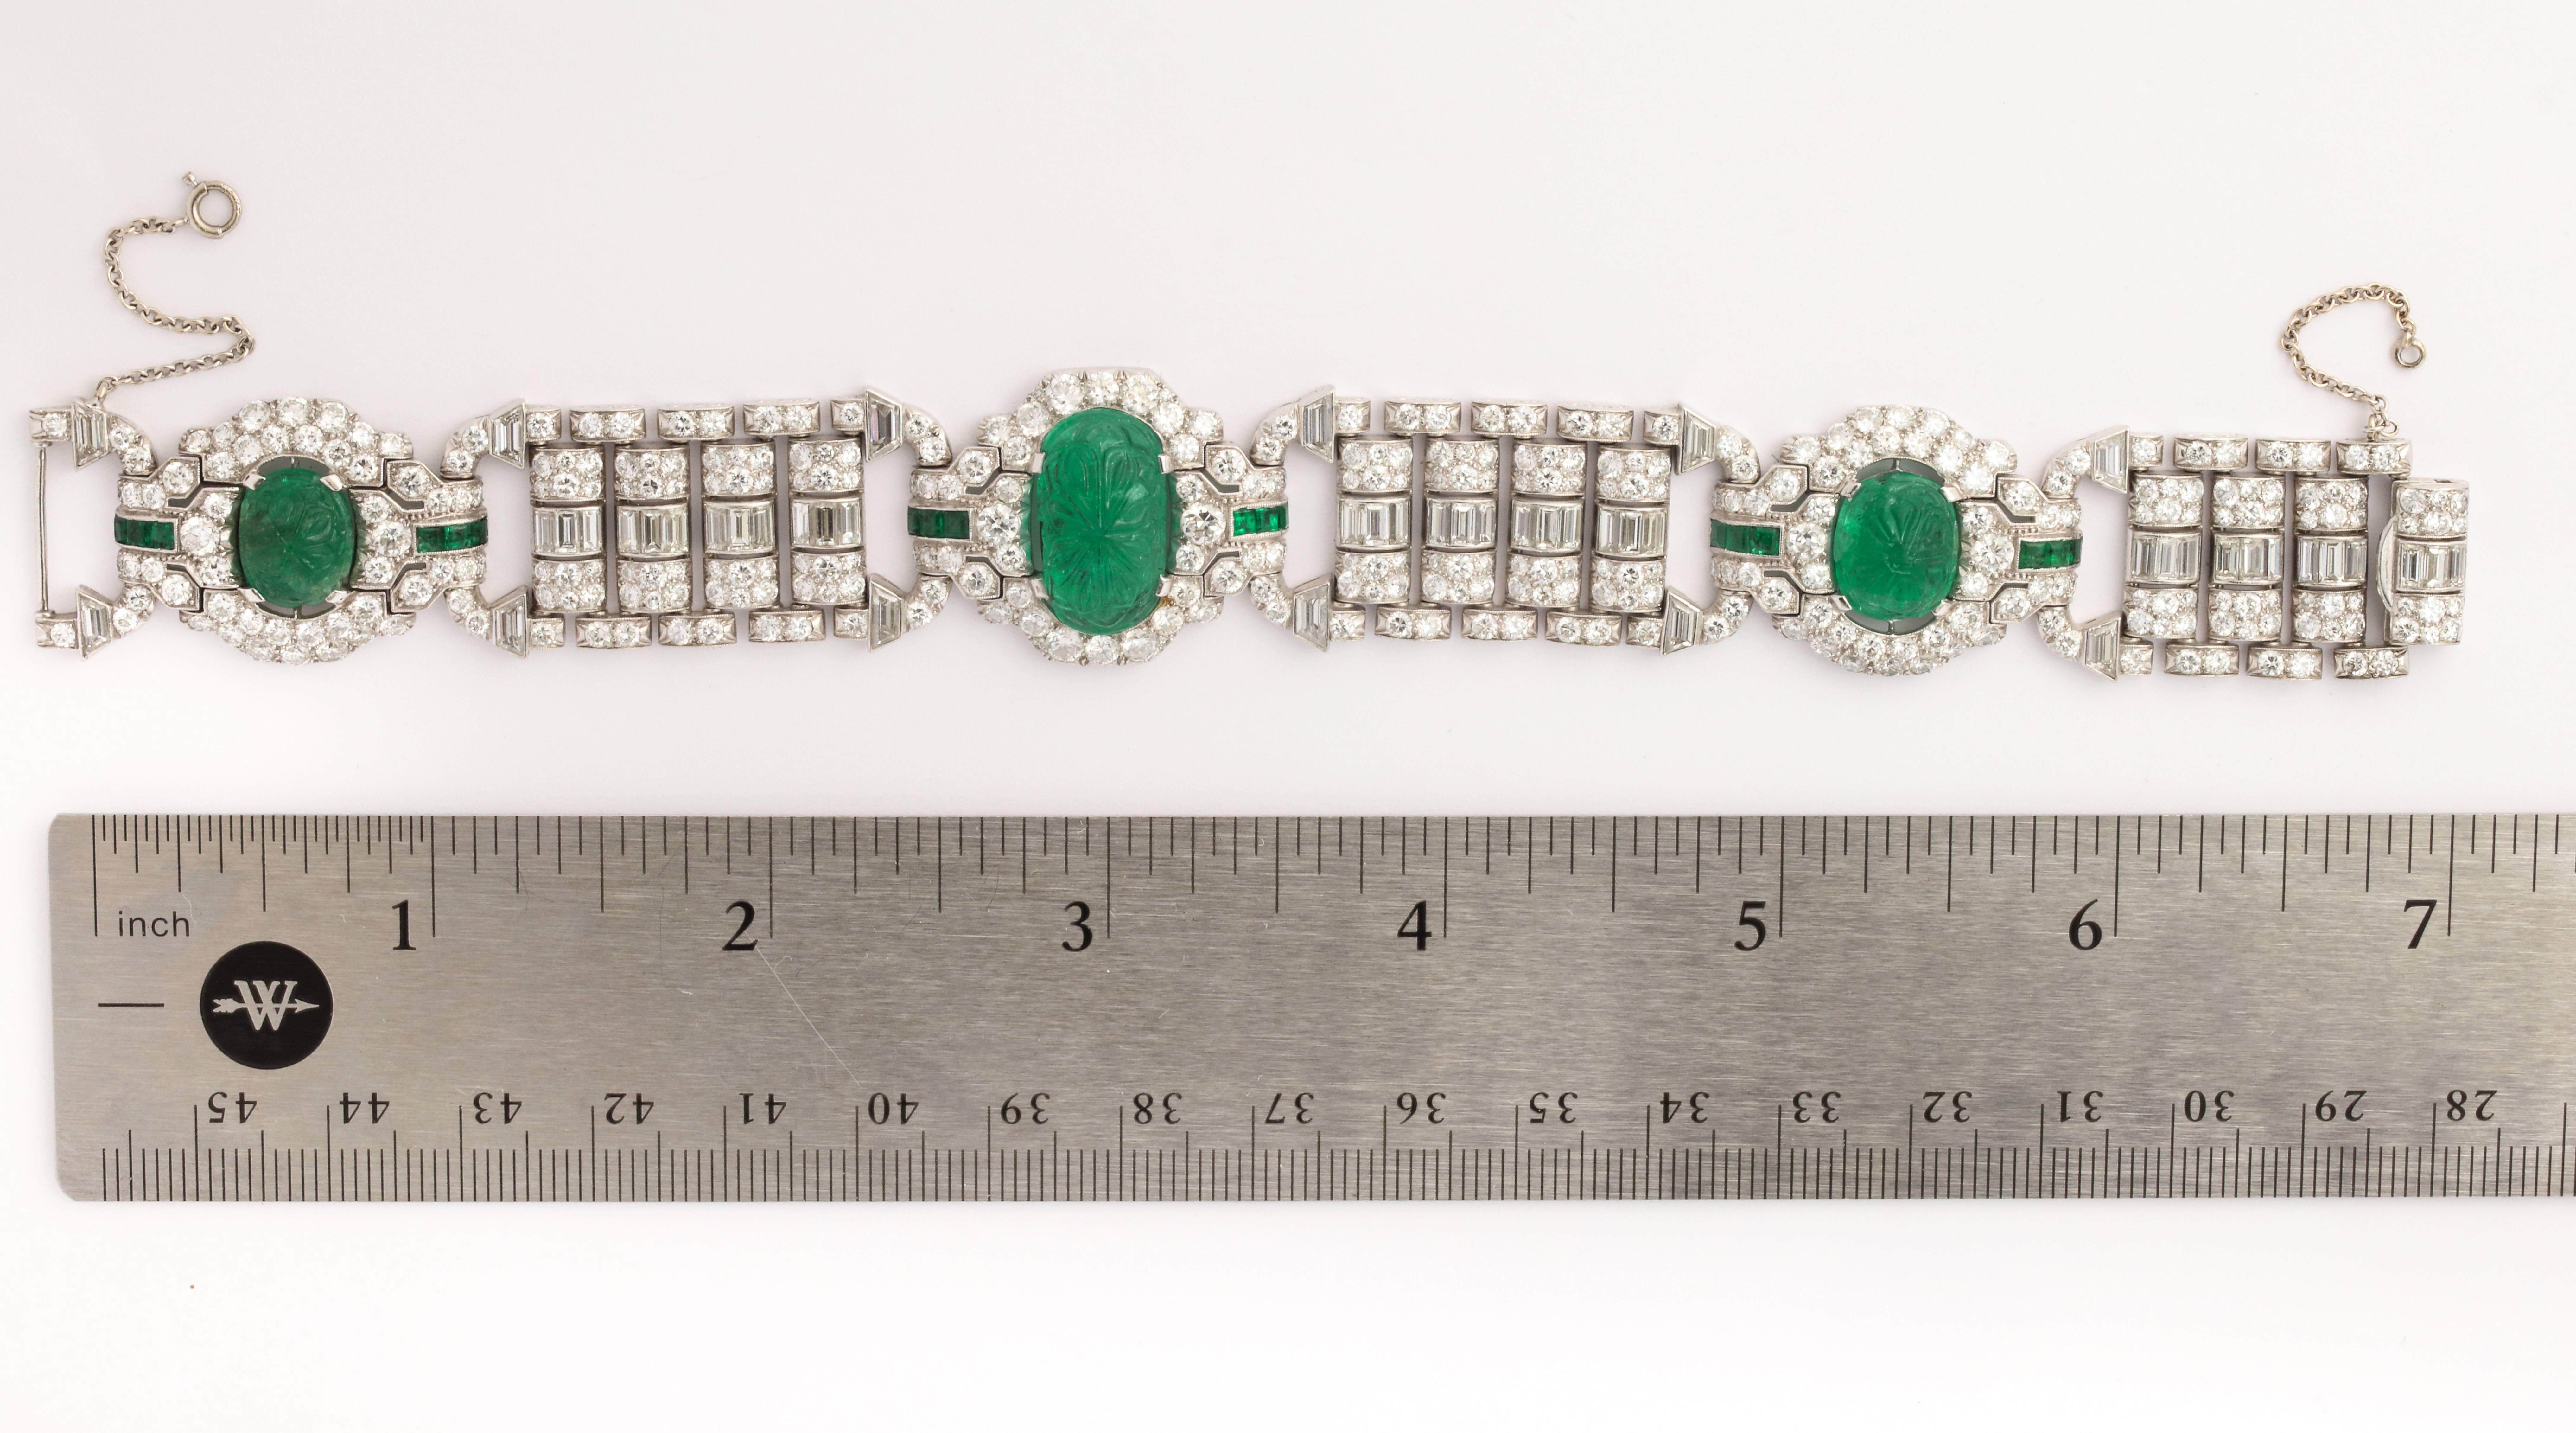 Ein wunderschönes Armband mit geschnitztem Smaragd und Diamanten

Mit drei sehr seltenen antiken Smaragden

Hergestellt CIRCA 1920

Abmessungen: 7